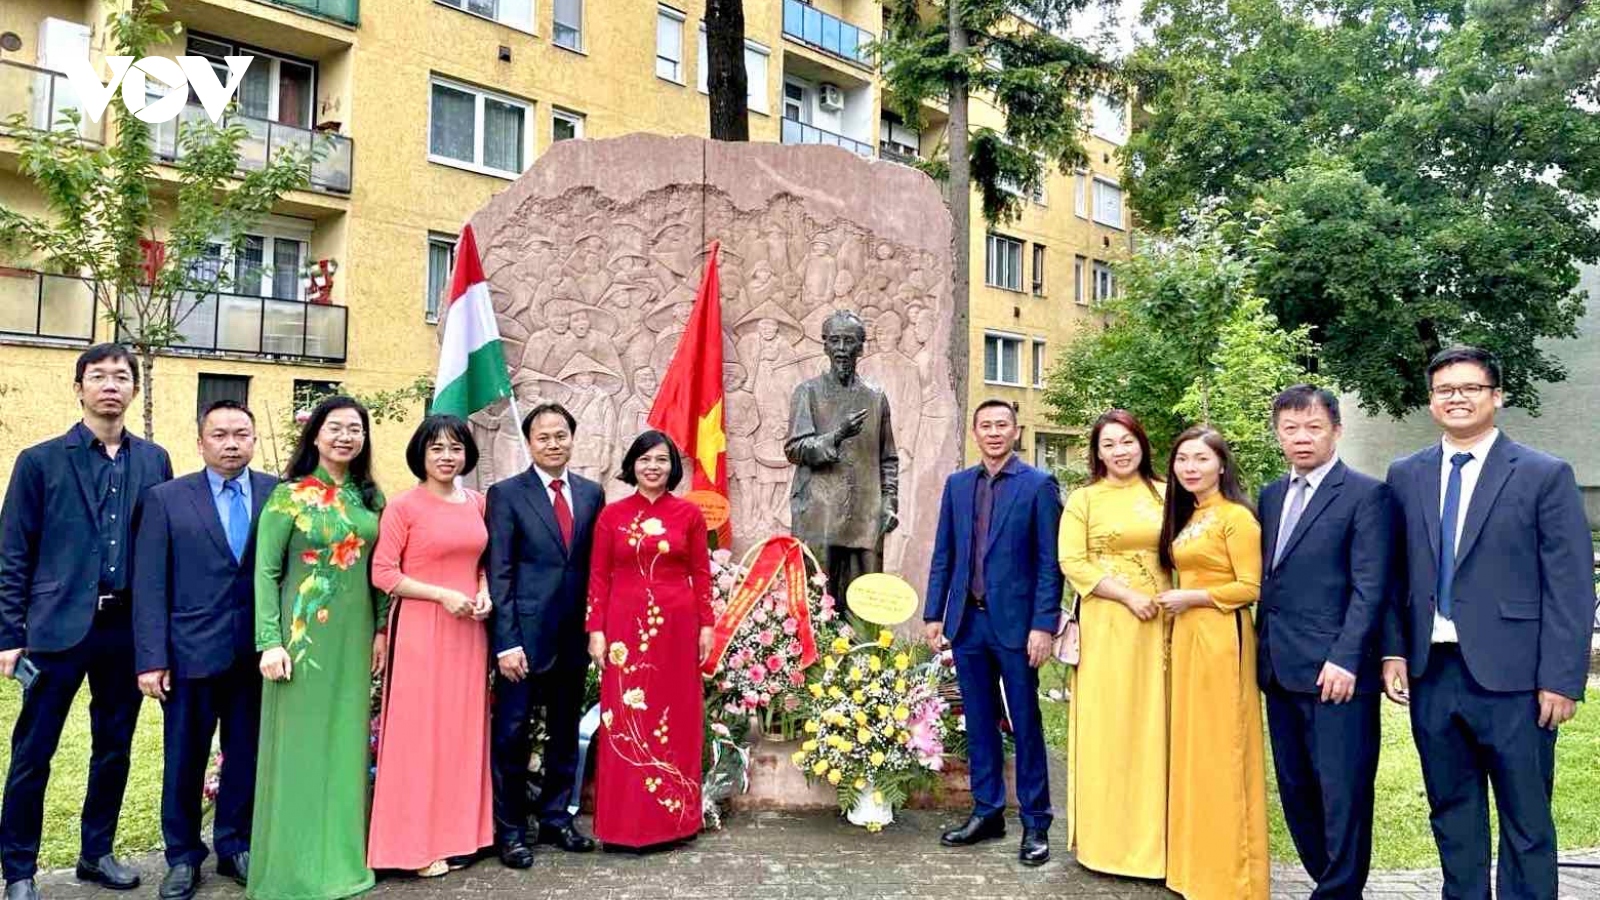 Kỷ niệm 134 năm ngày sinh chủ tịch Hồ Chí Minh tại Hungary